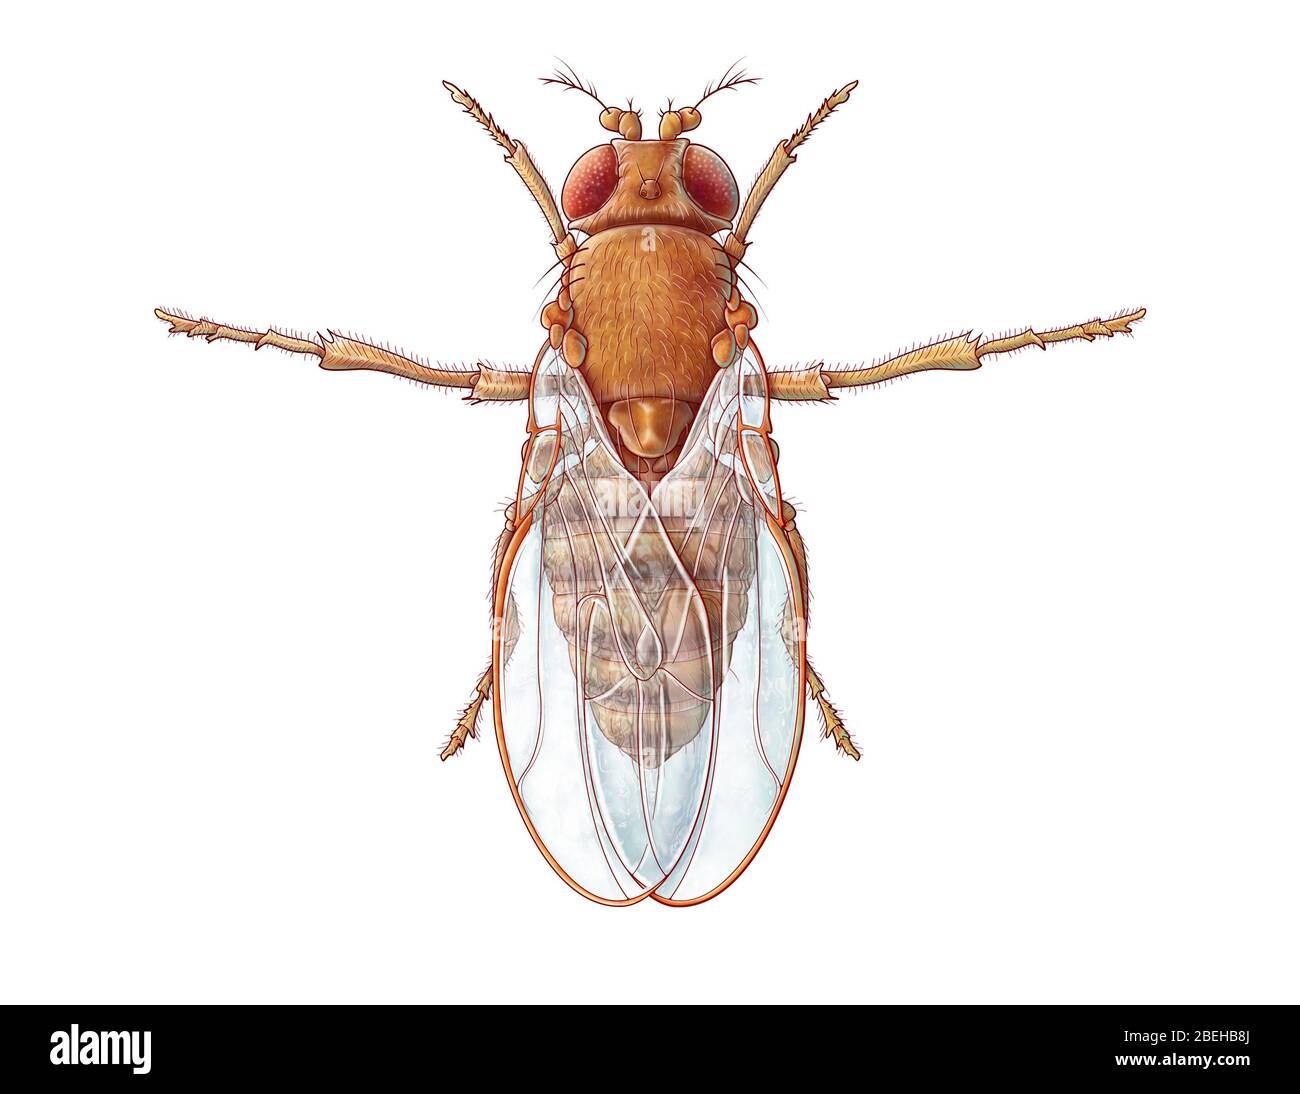 Un'illustrazione della mosca comune della frutta, conosciuta anche come melanogaster di Drosophila. Mentre le mosche di frutta sono parassiti domestici comuni, sono anche usate dai ricercatori per studiare genetica, fisiologia, patologia ed evoluzione. Foto Stock